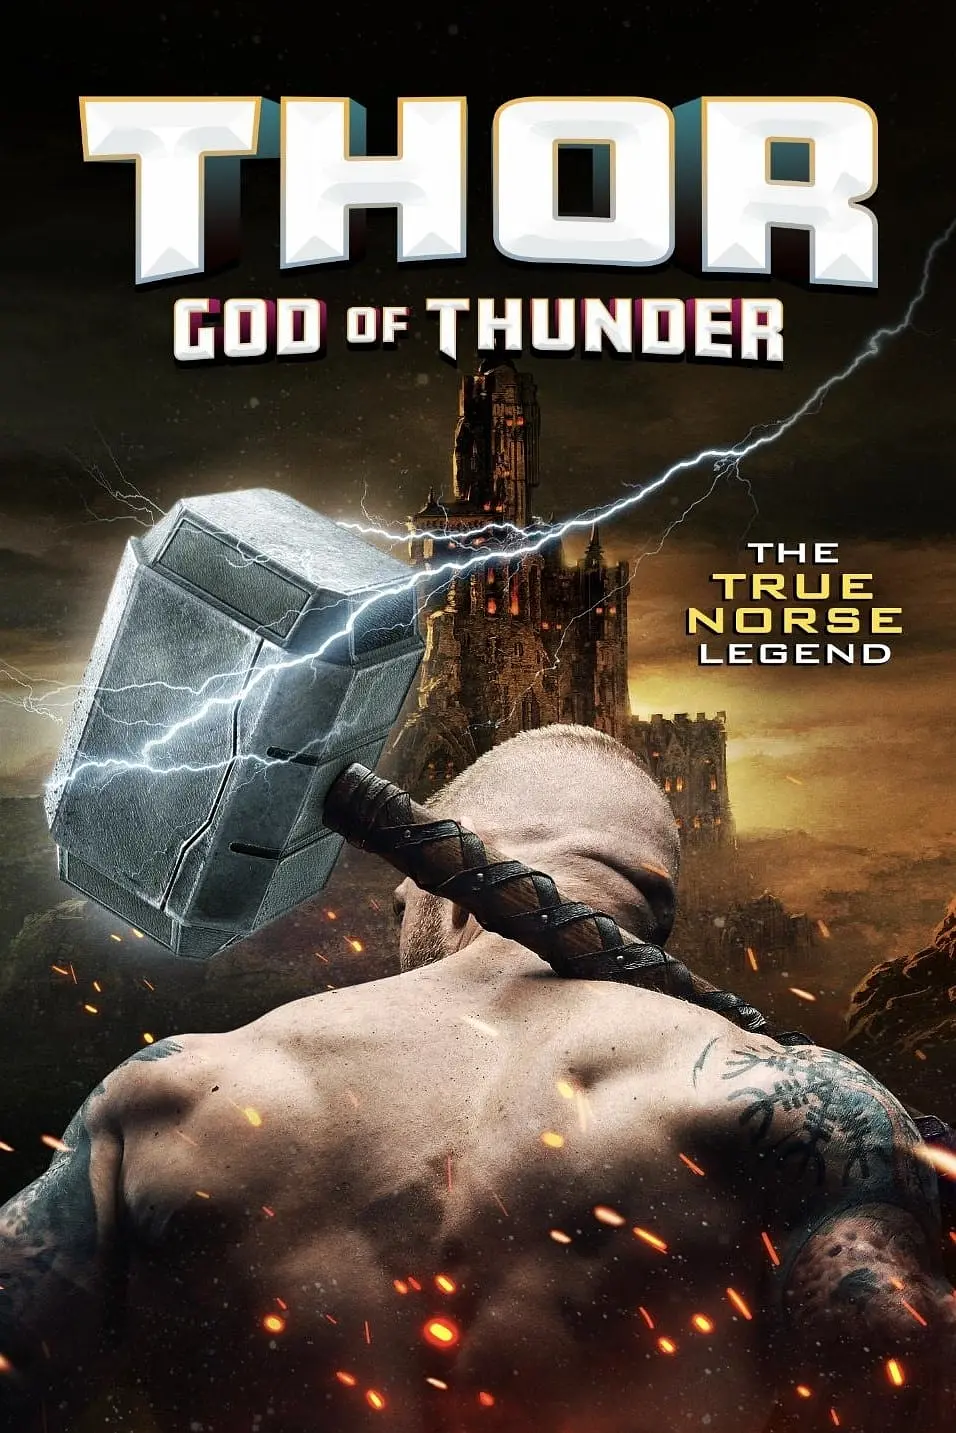 托尔：雷神Thor:GodofThunder